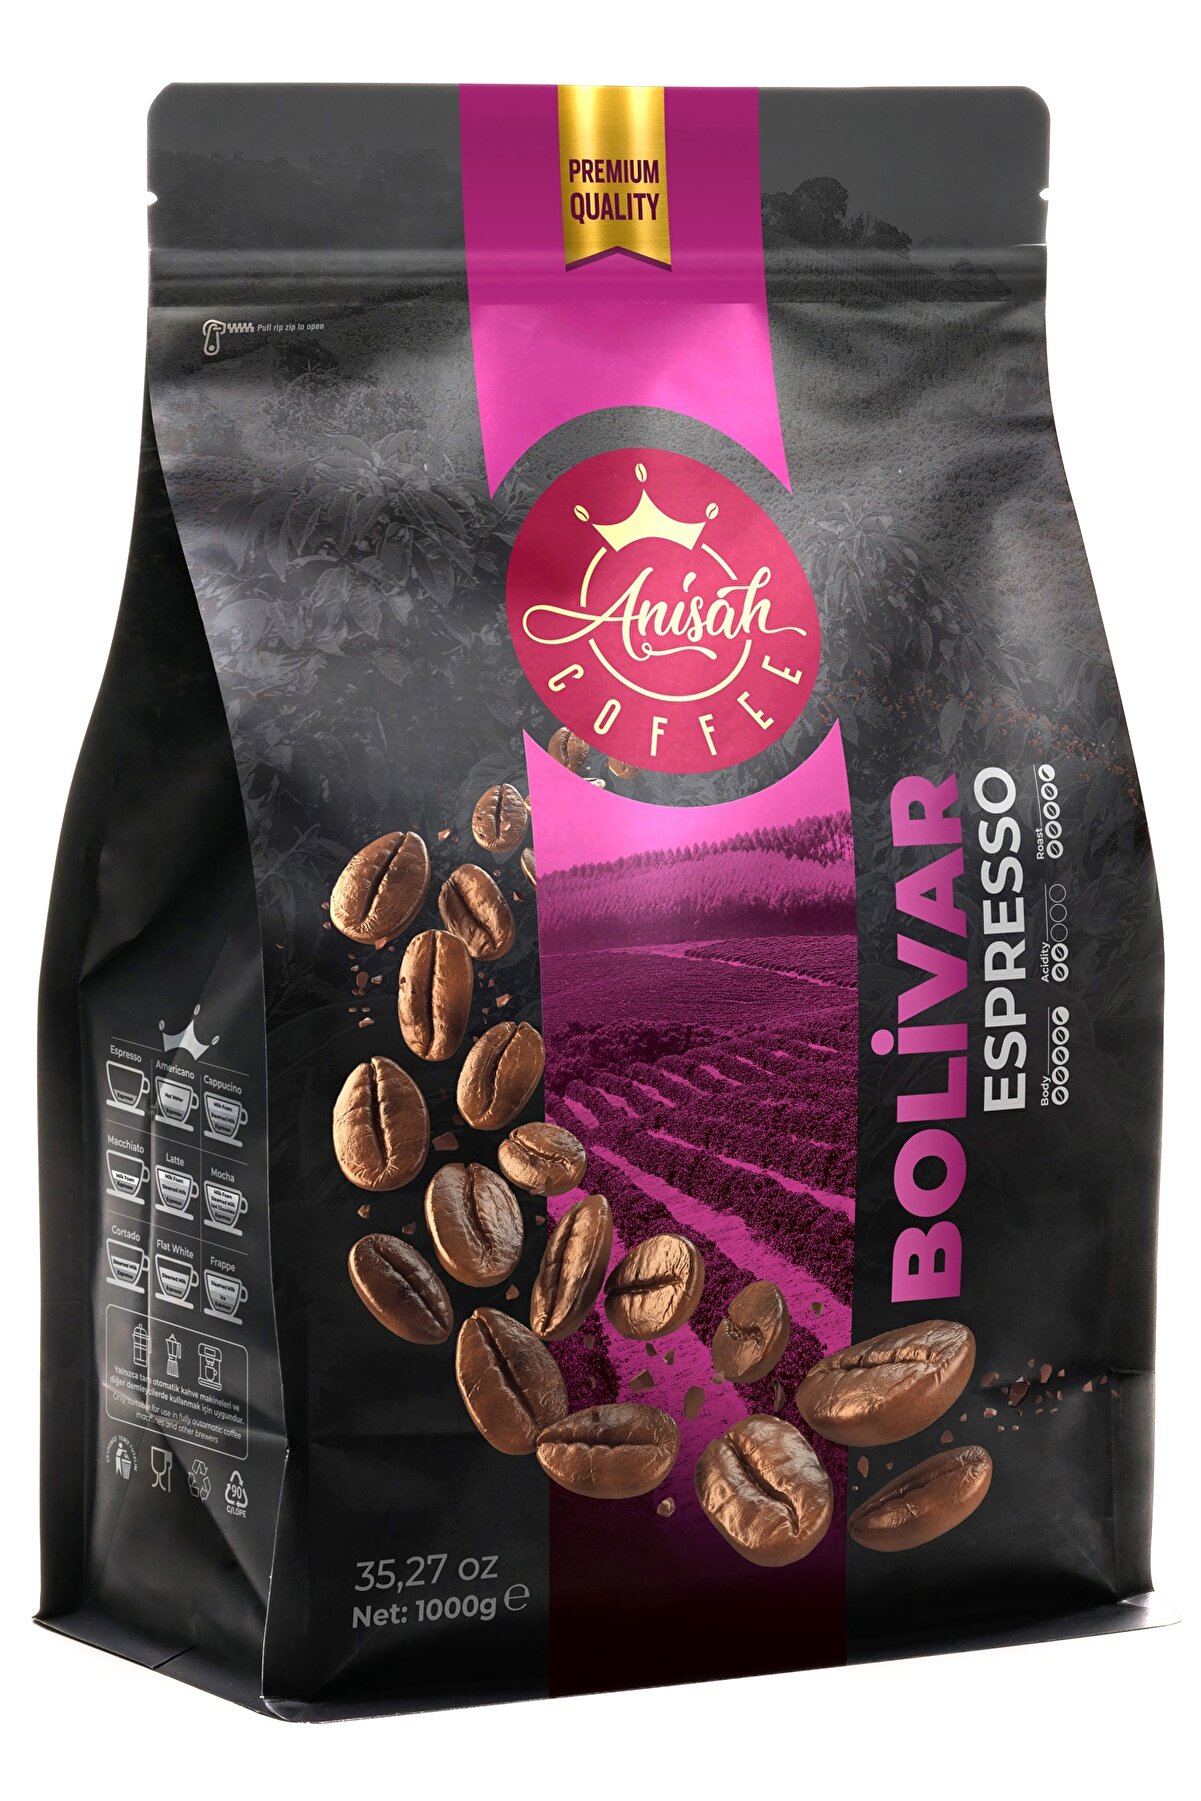 Anisah Coffee Bolivar Koyu Kavrulmuş (DARK ROAST) Espresso Blend Çekirdek Kahve 1000g | Dolgun Gövde-dengeli Tat